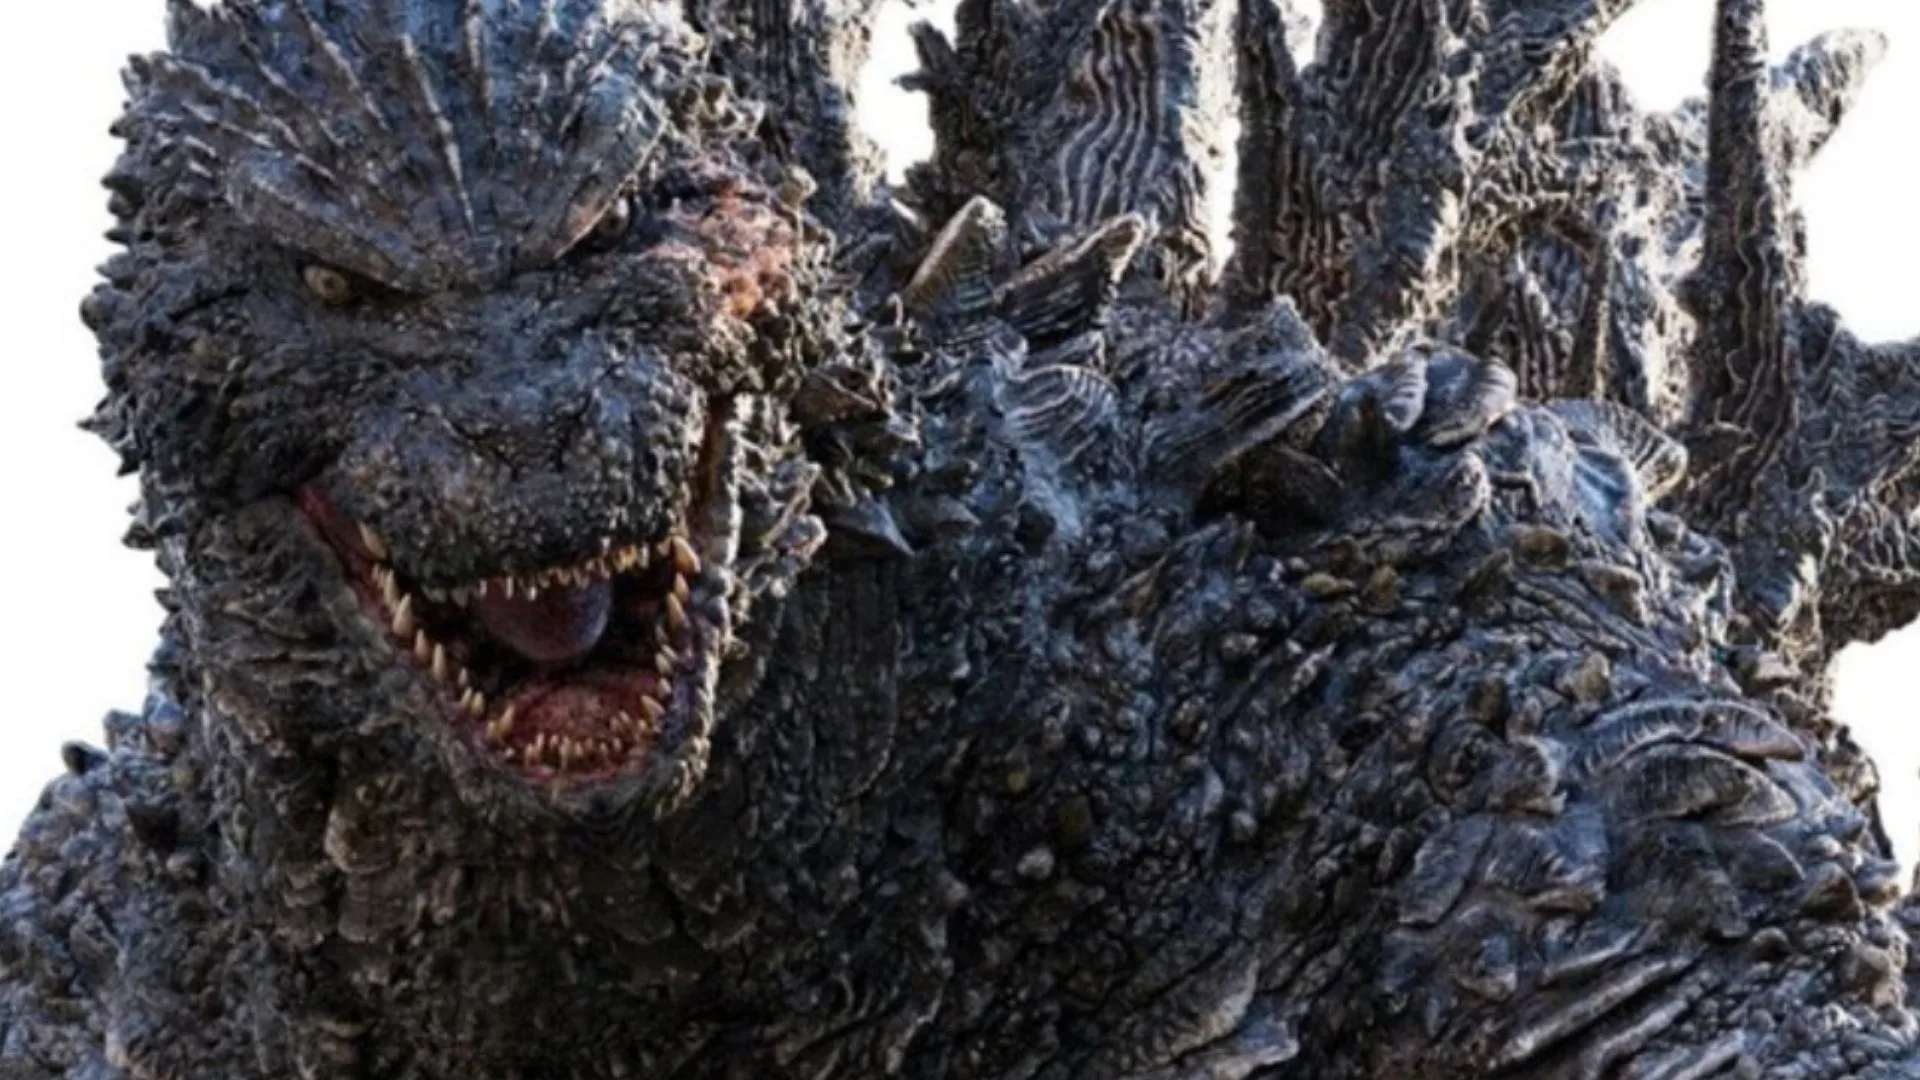 Clasificamos a los Godzilla de la historia del cine, del más poderoso al más enclenque, en este ranking que mide también su poder taquillero.